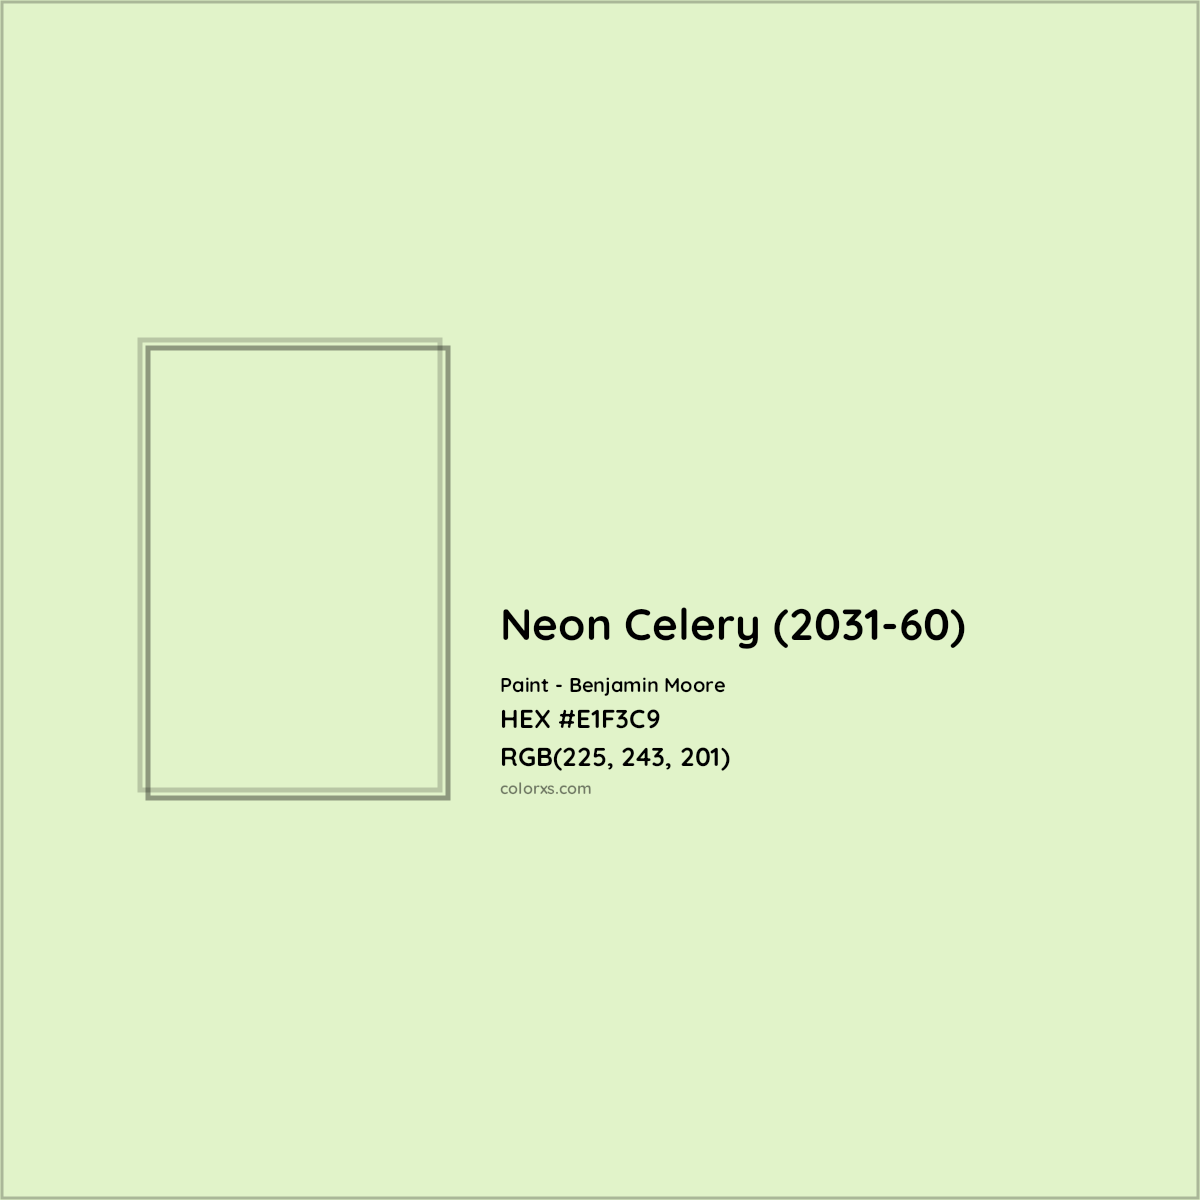 HEX #E1F3C9 Neon Celery (2031-60) Paint Benjamin Moore - Color Code